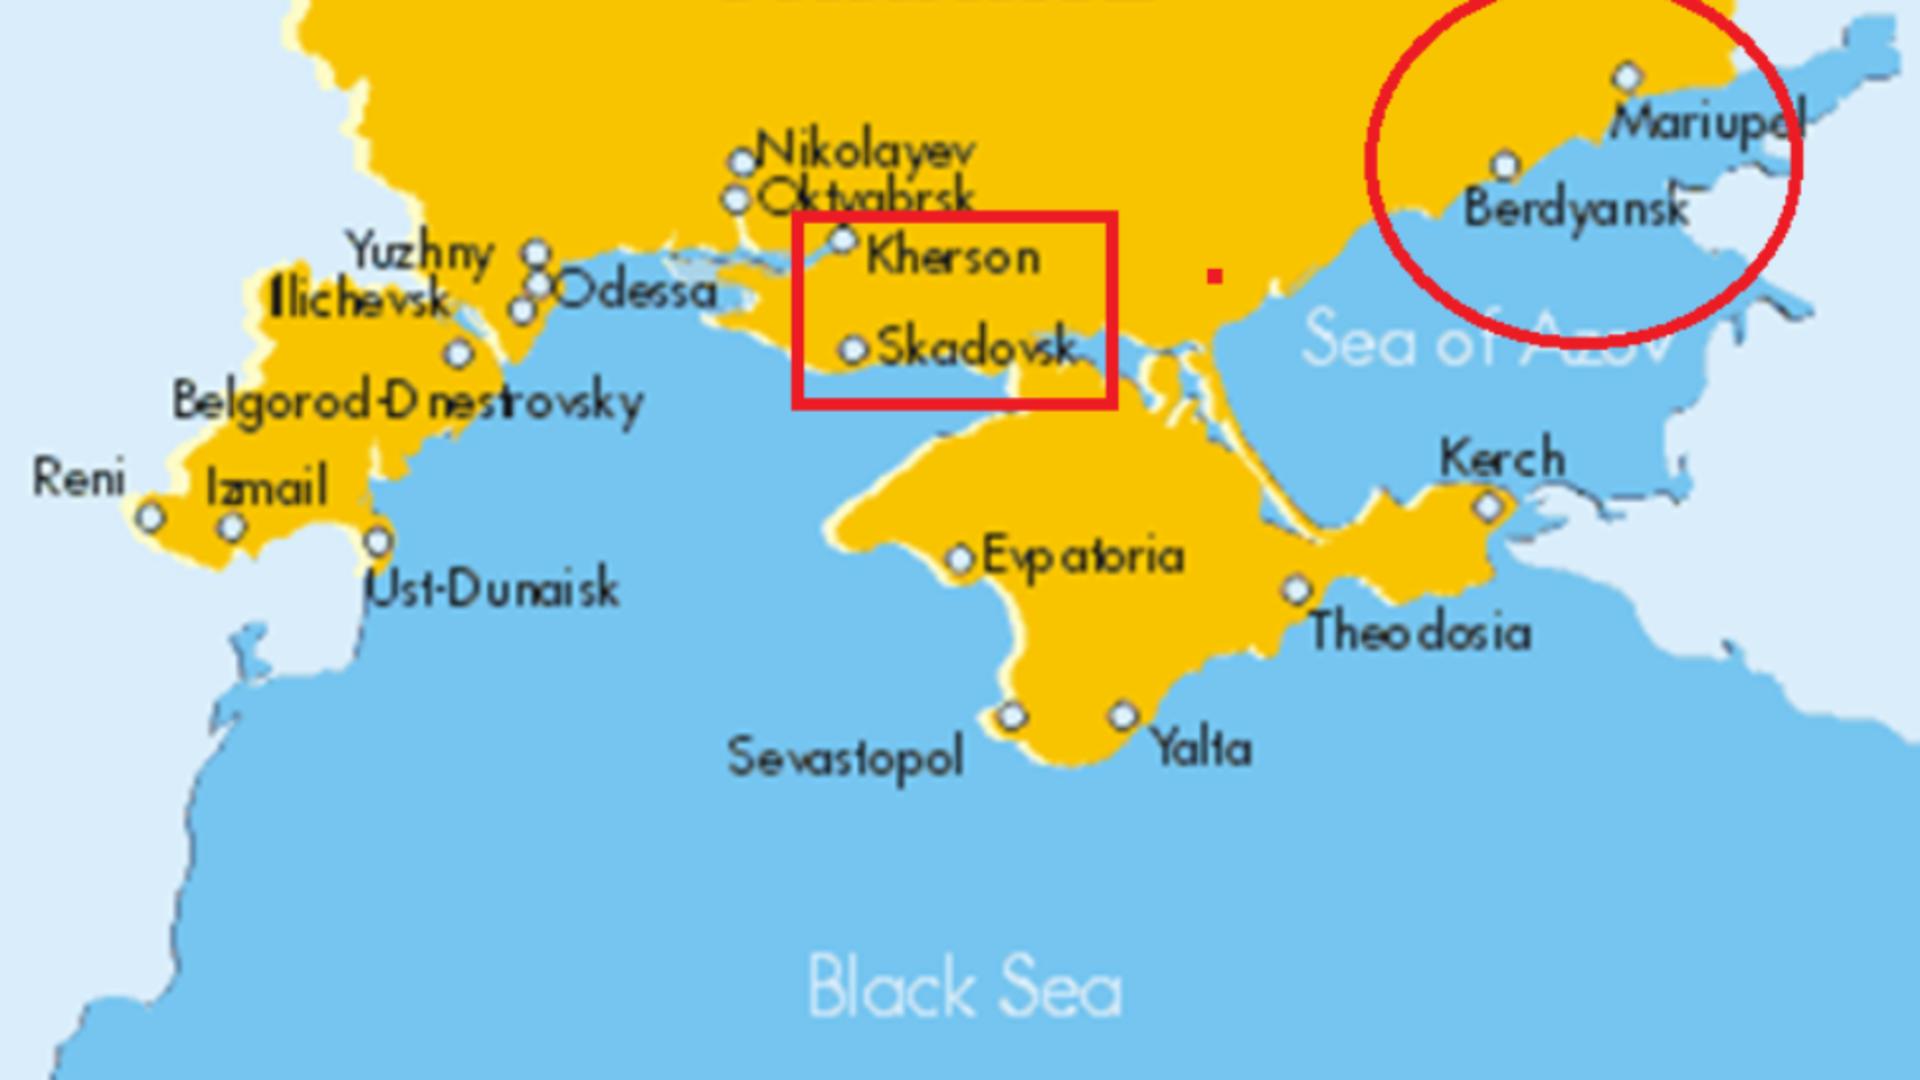 Ucraina a ÎNCHIS oficial cele 4 porturi maritime capturate de ruși: ce SOLUȚII au găsit autoritățile pentru a continua exportul de cereale